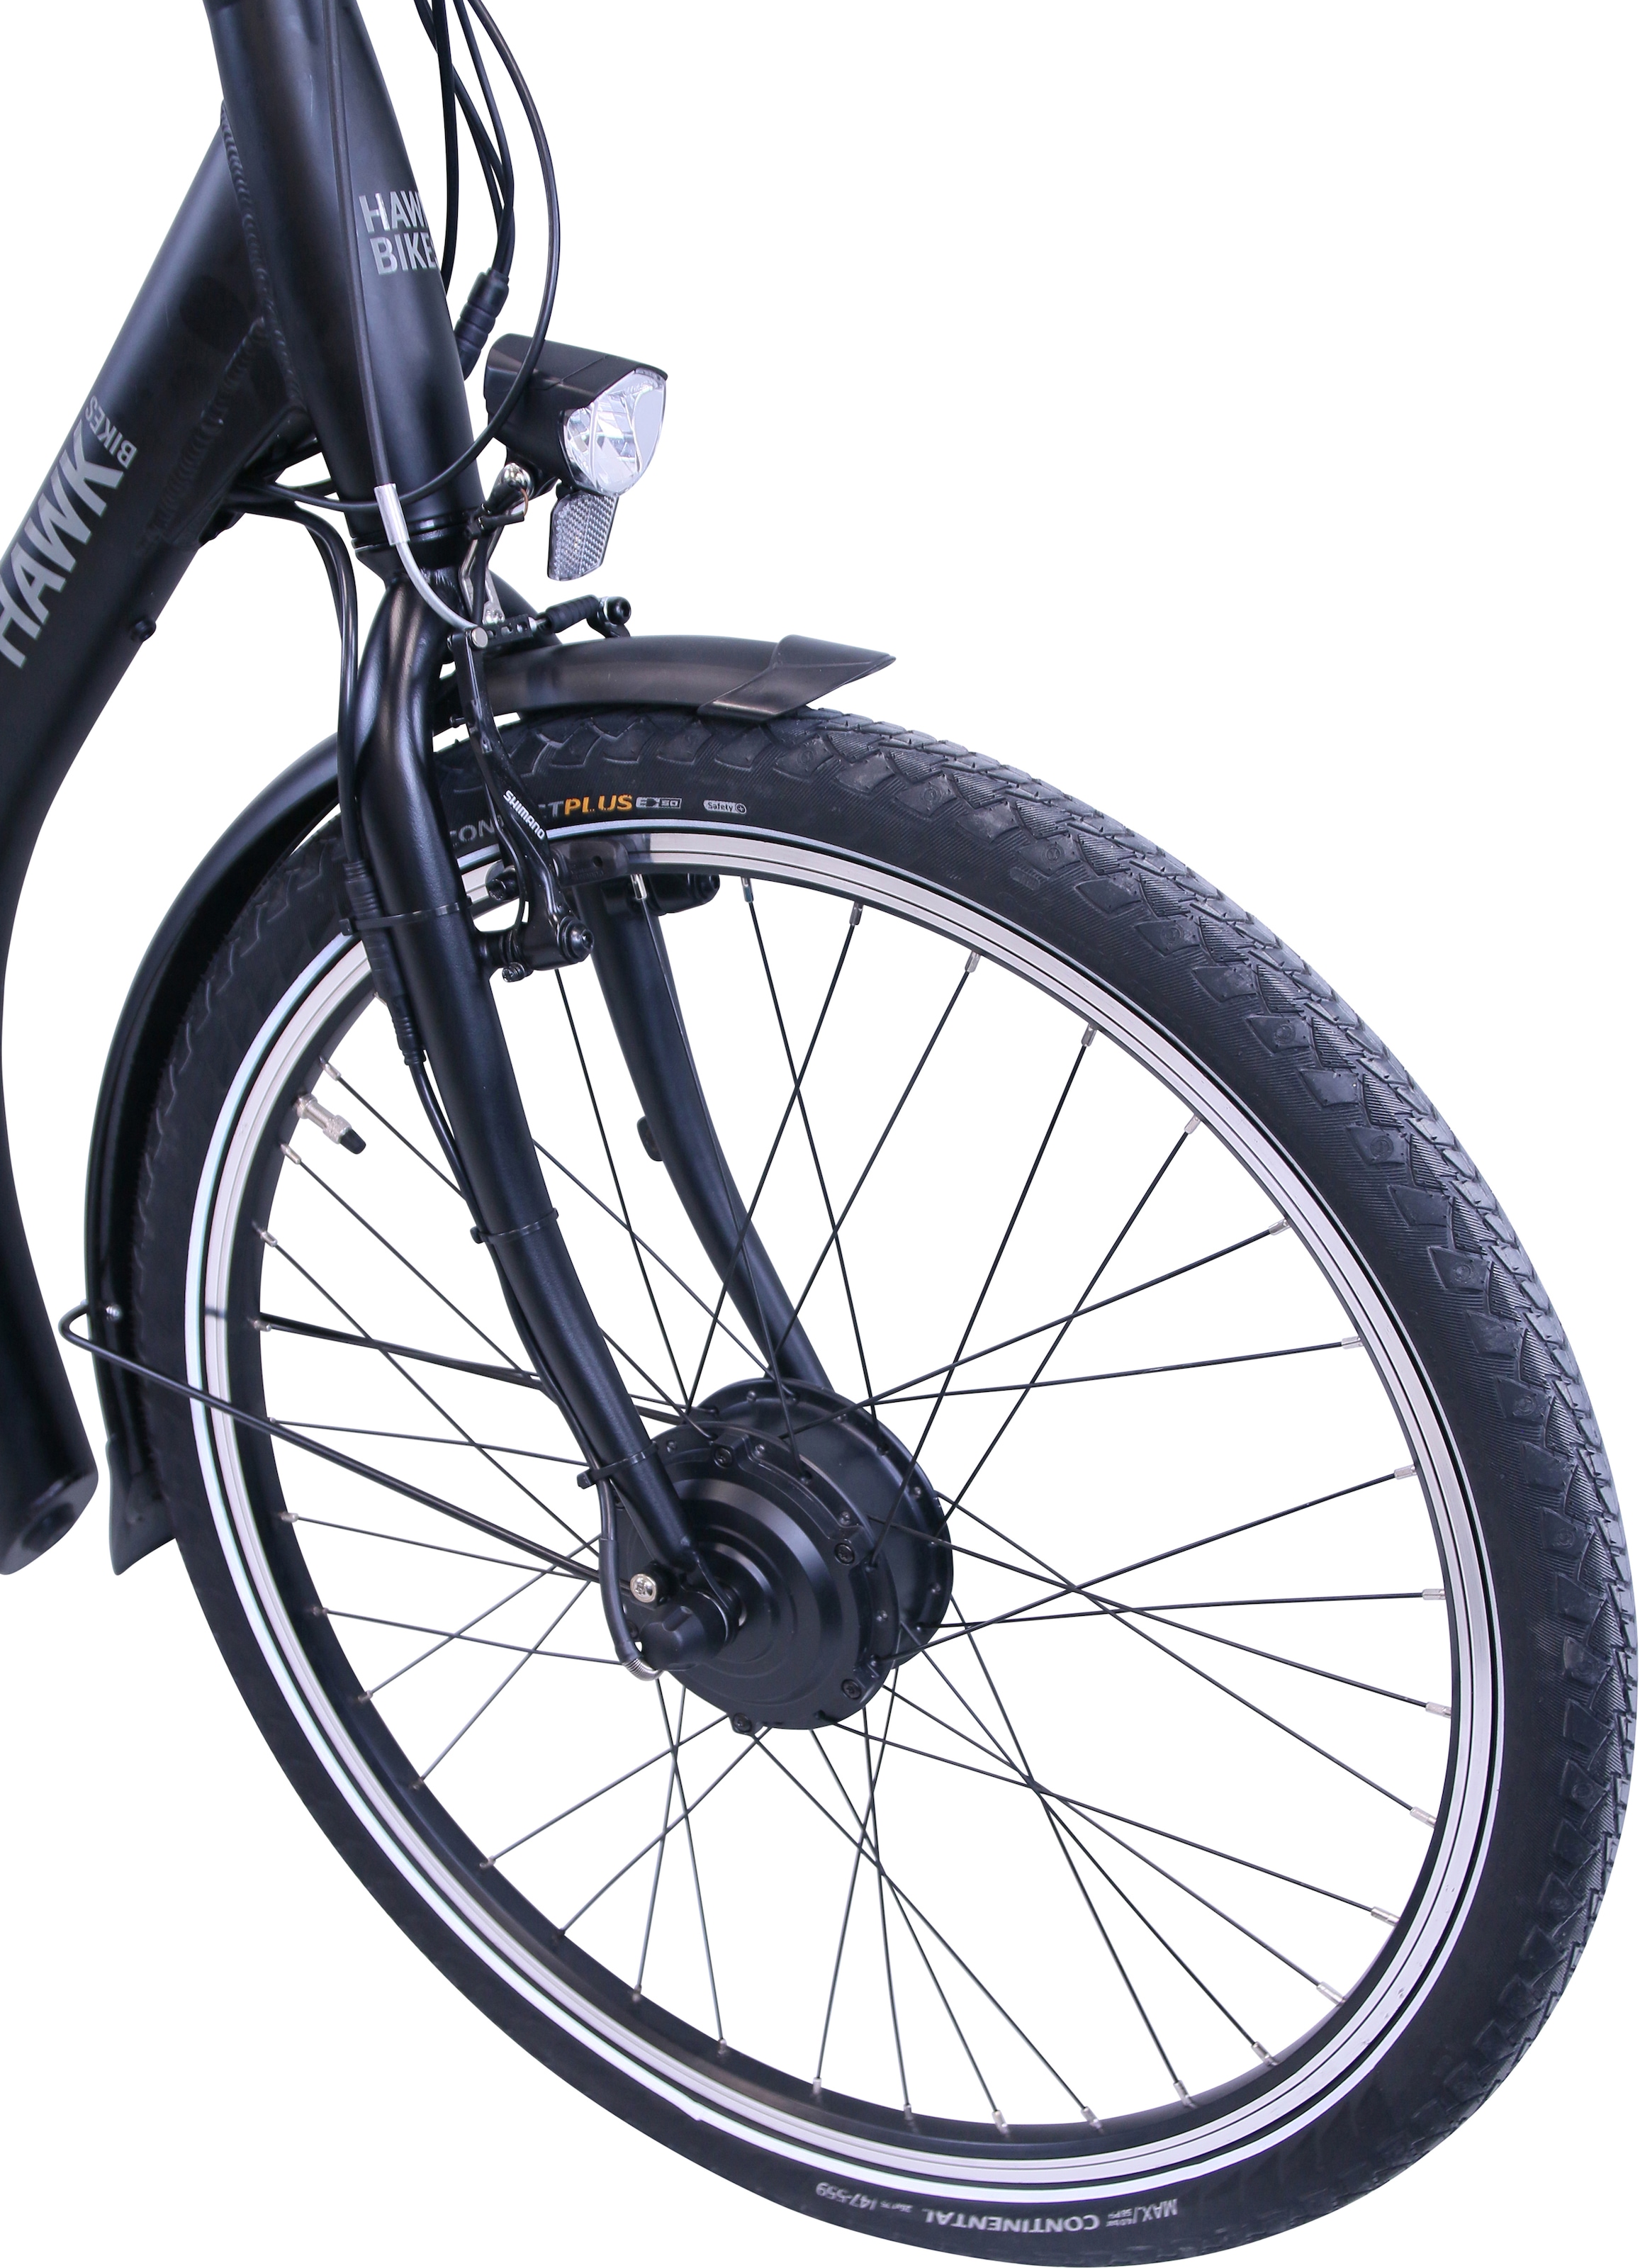 HAWK Bikes E-Bike »HAWK eCity Comfort«, 7 Gang, Shimano, Nexus 7-Gang, Frontmotor 250 W